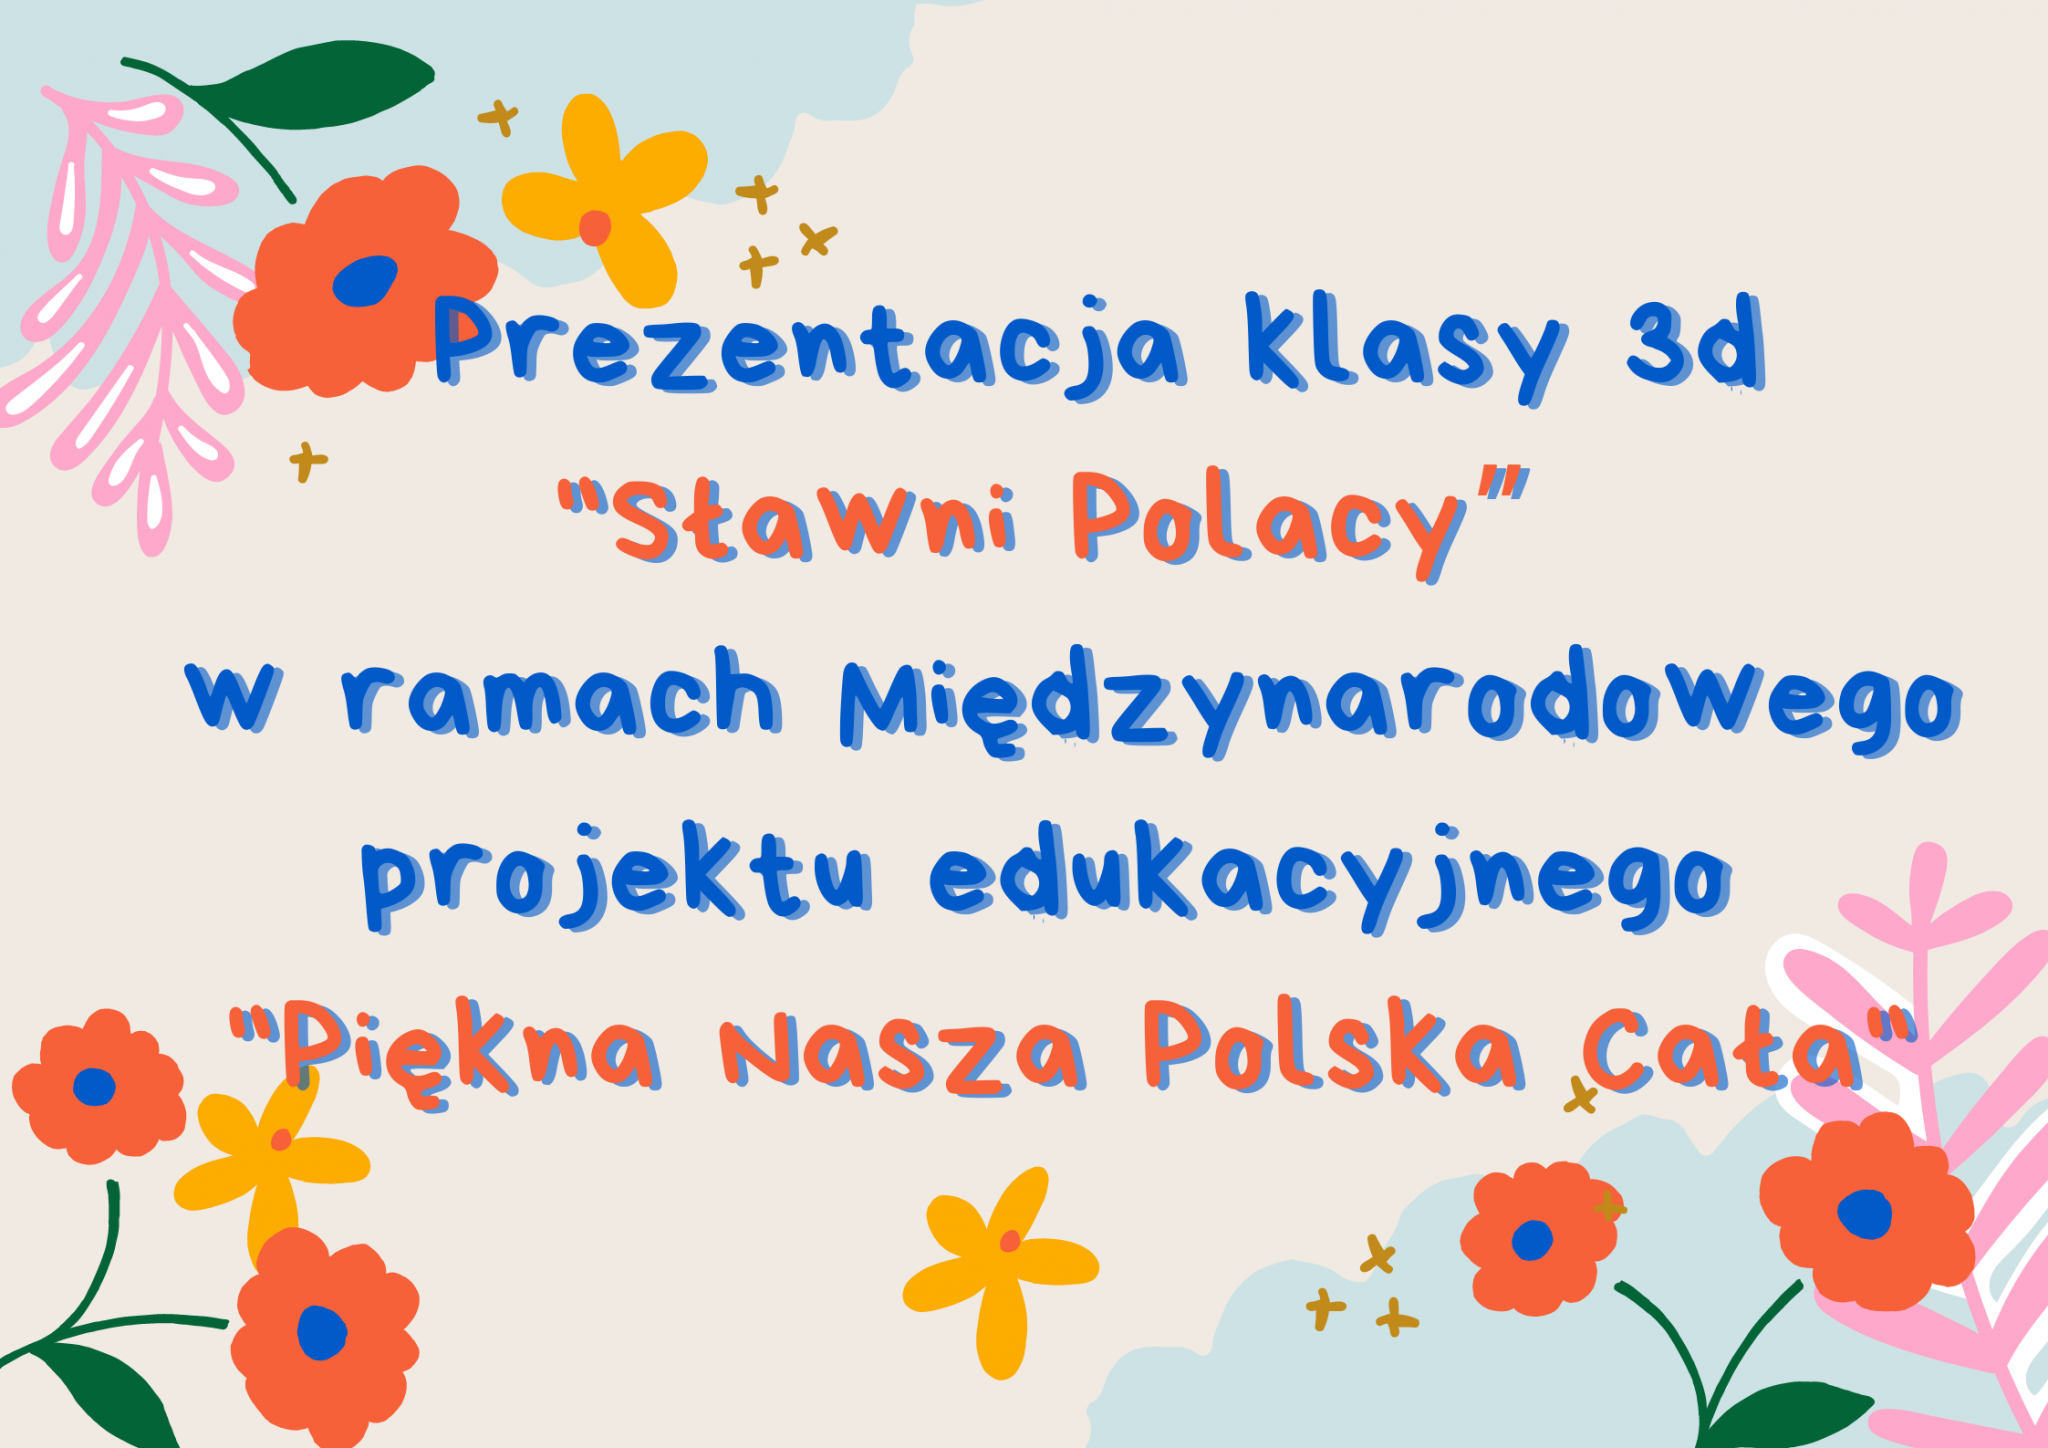 Prezentacja klasy 3d "Sławni Polacy” w ramach Międzynarodowego projektu edukacyjnego "Piękna Nasza Polska Cała"